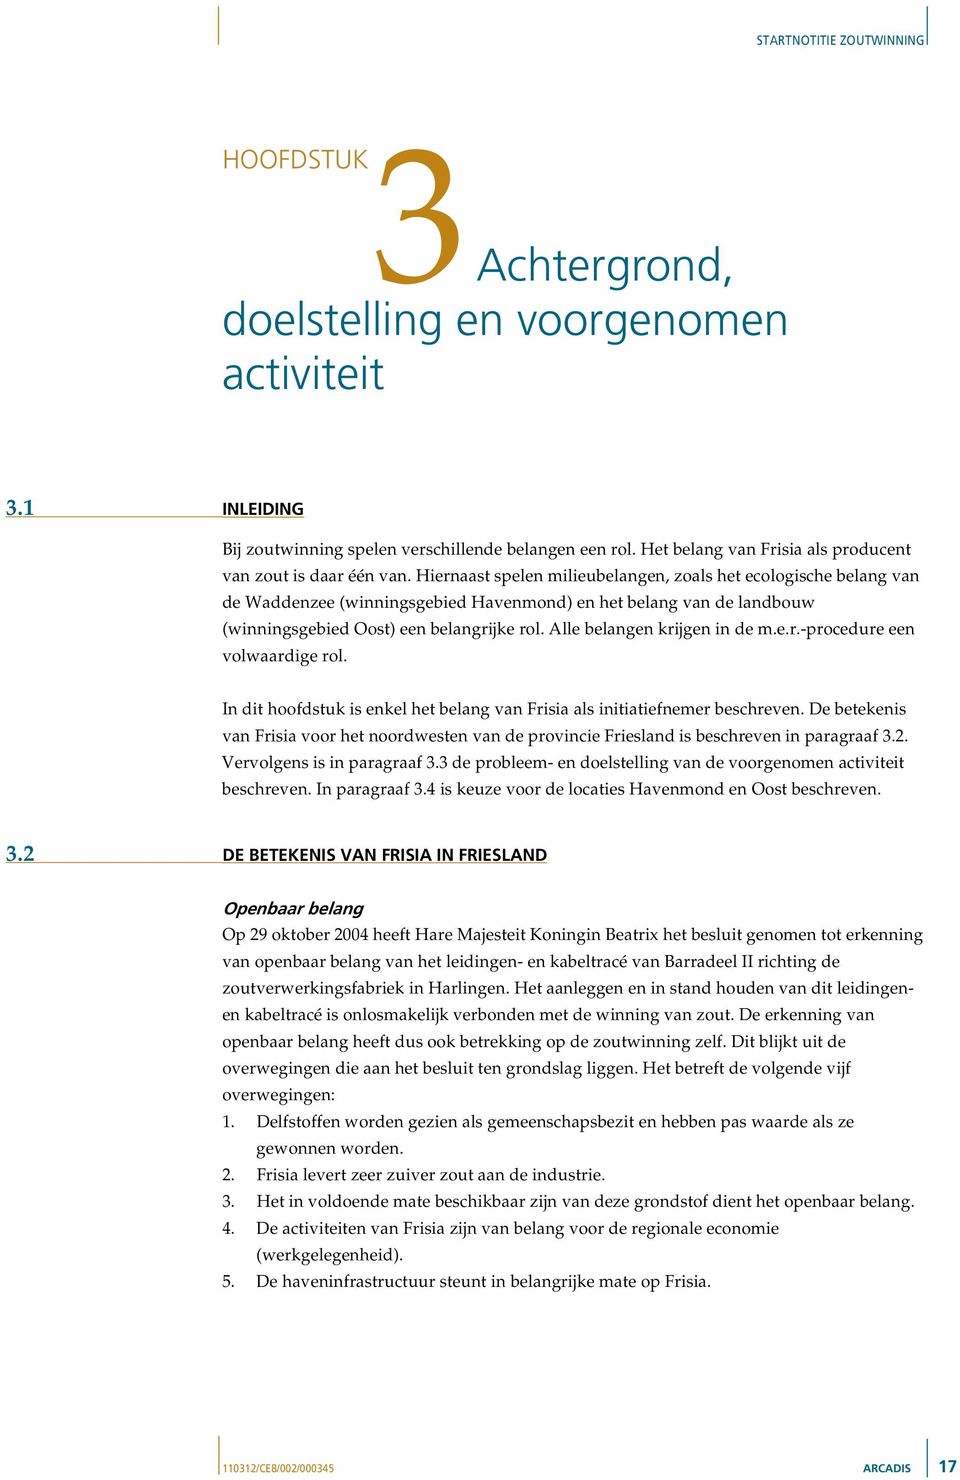 Alle belangen krijgen in de m.e.r.-procedure een volwaardige rol. In dit hoofdstuk is enkel het belang van Frisia als initiatiefnemer beschreven.